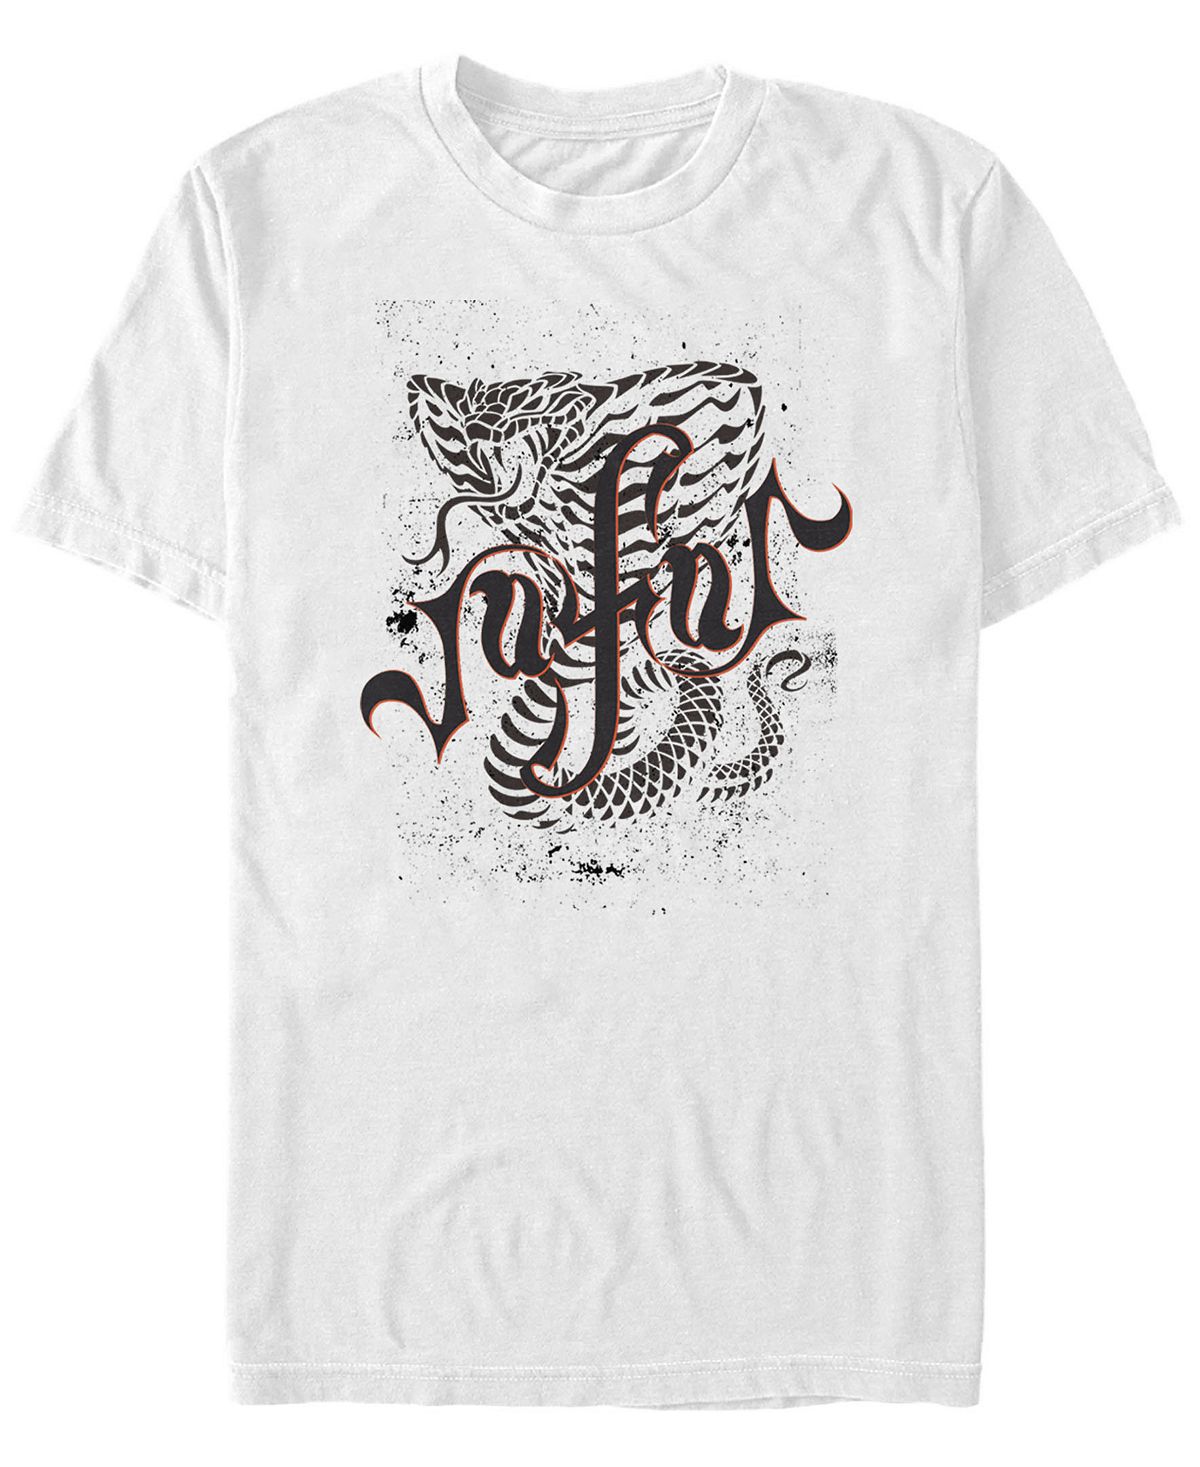 Мужская футболка с коротким рукавом disney aladdin live action jafar cobra sketch Fifth Sun, белый